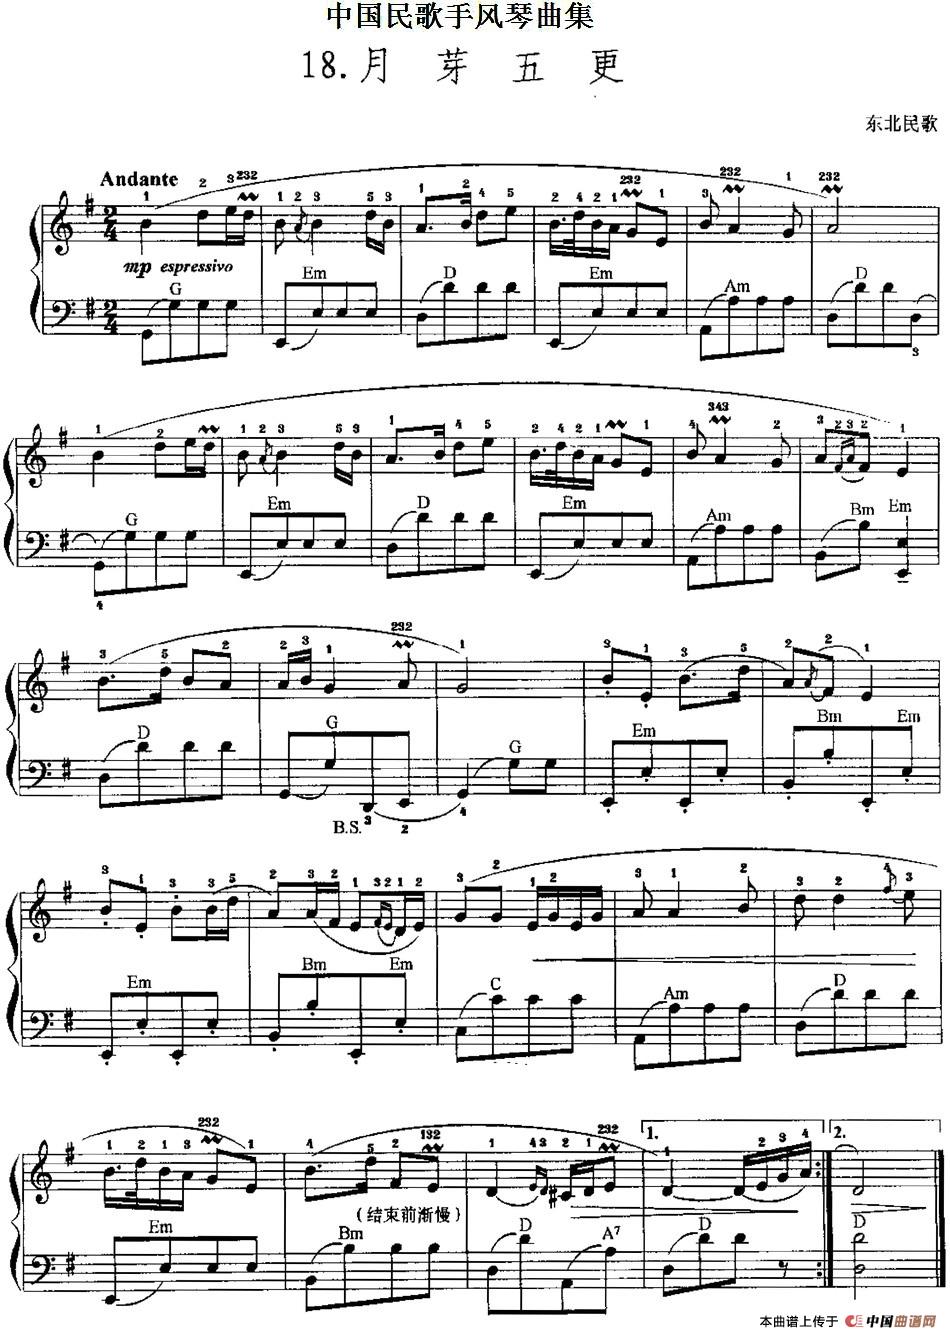 中国民歌手风琴曲集：18、月芽五更手风琴谱（线简谱对照、带指法版）